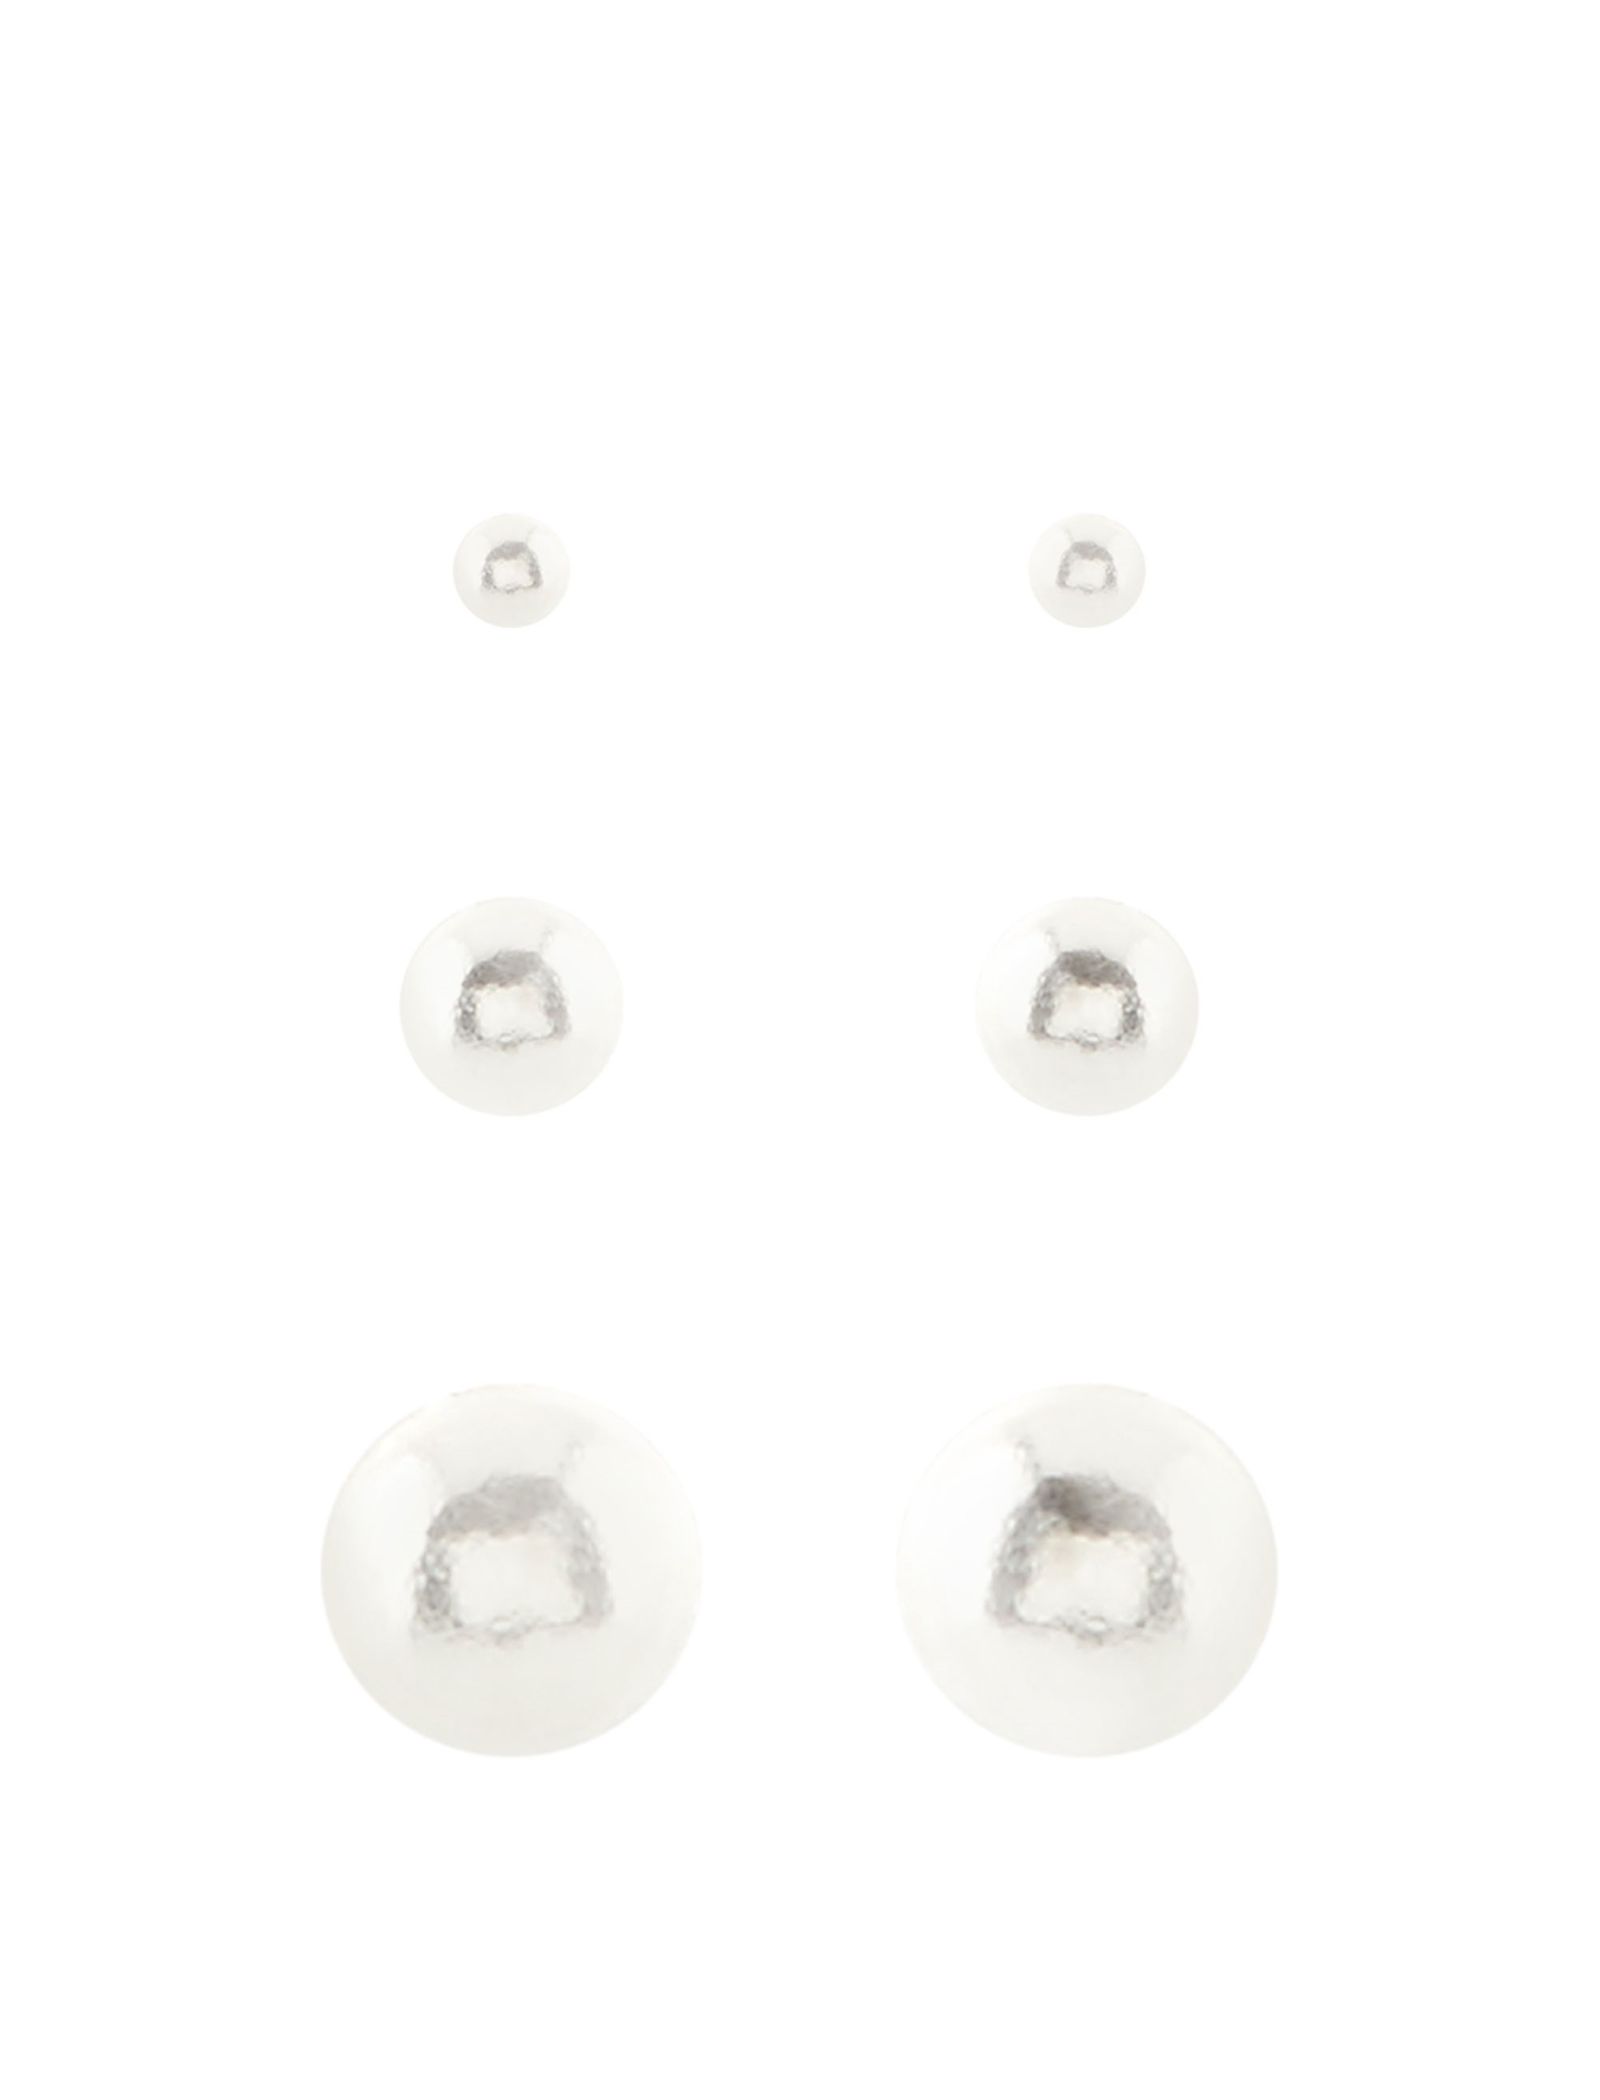 ست گوشواره زنانه بسته 3 عددی - اکسسورایز تک سایز - نقره اي - 1